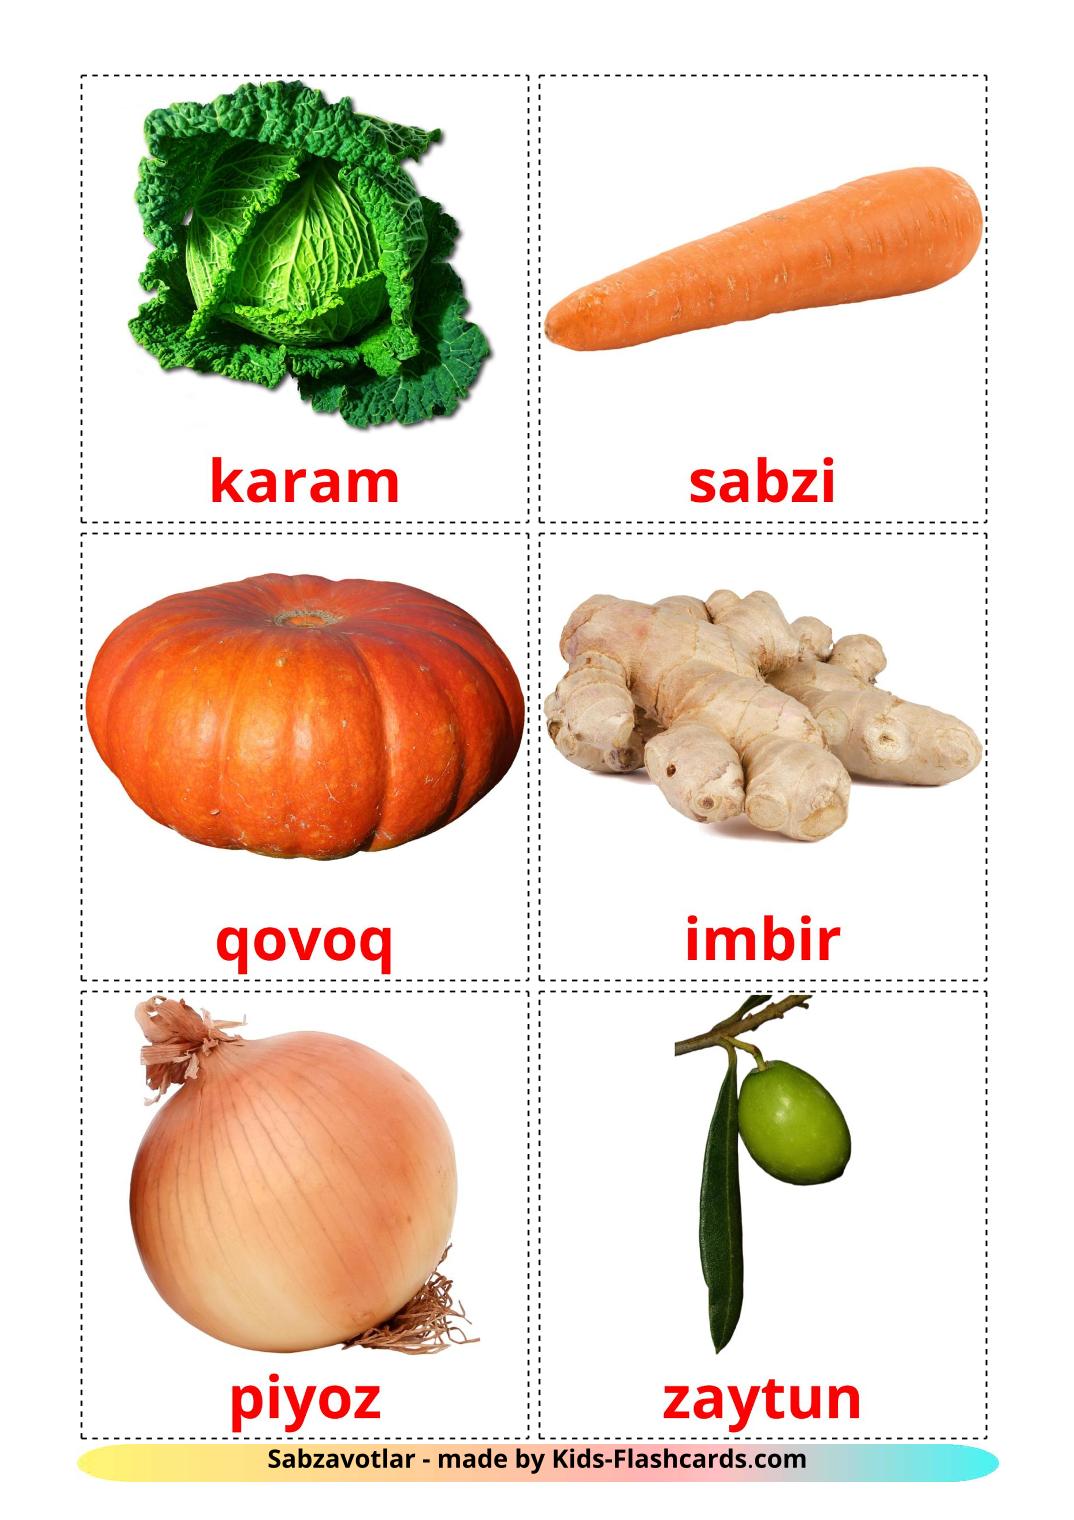 Les Légumes - 29 Flashcards ouzbek imprimables gratuitement